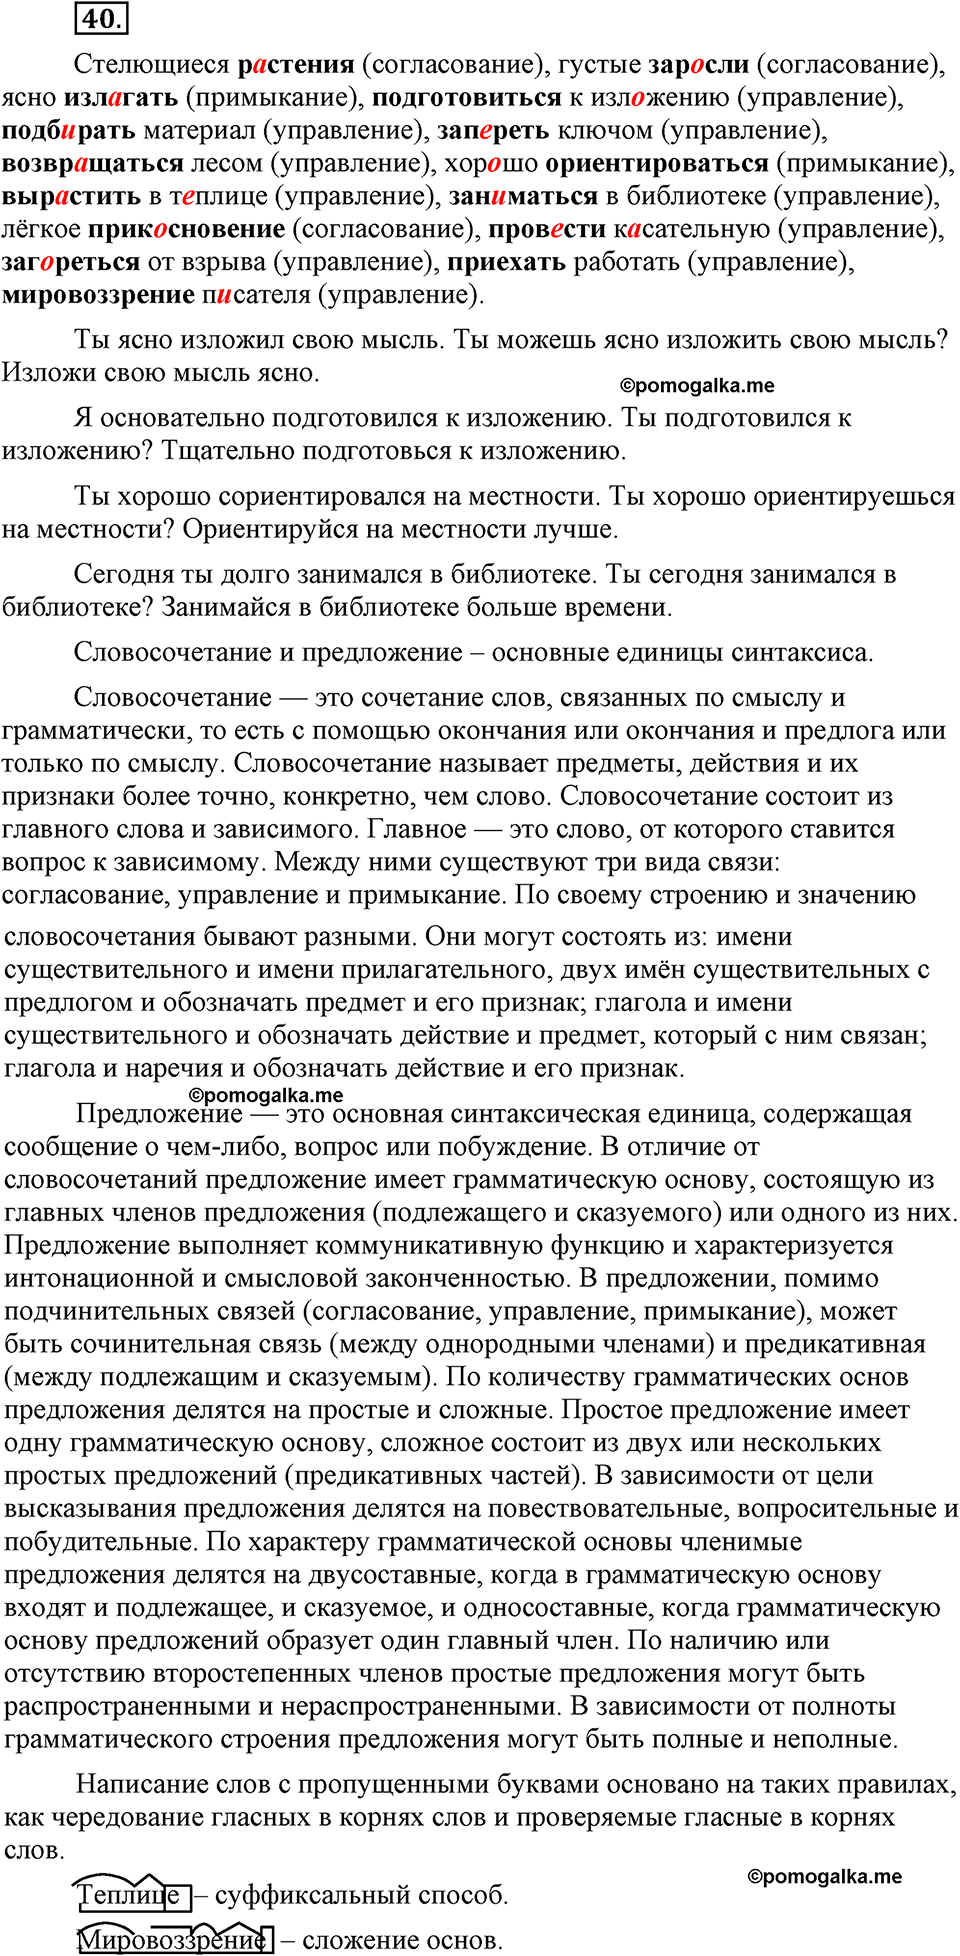 страница 13 номер 40 русский язык 9 класс Бархударов 2011 год